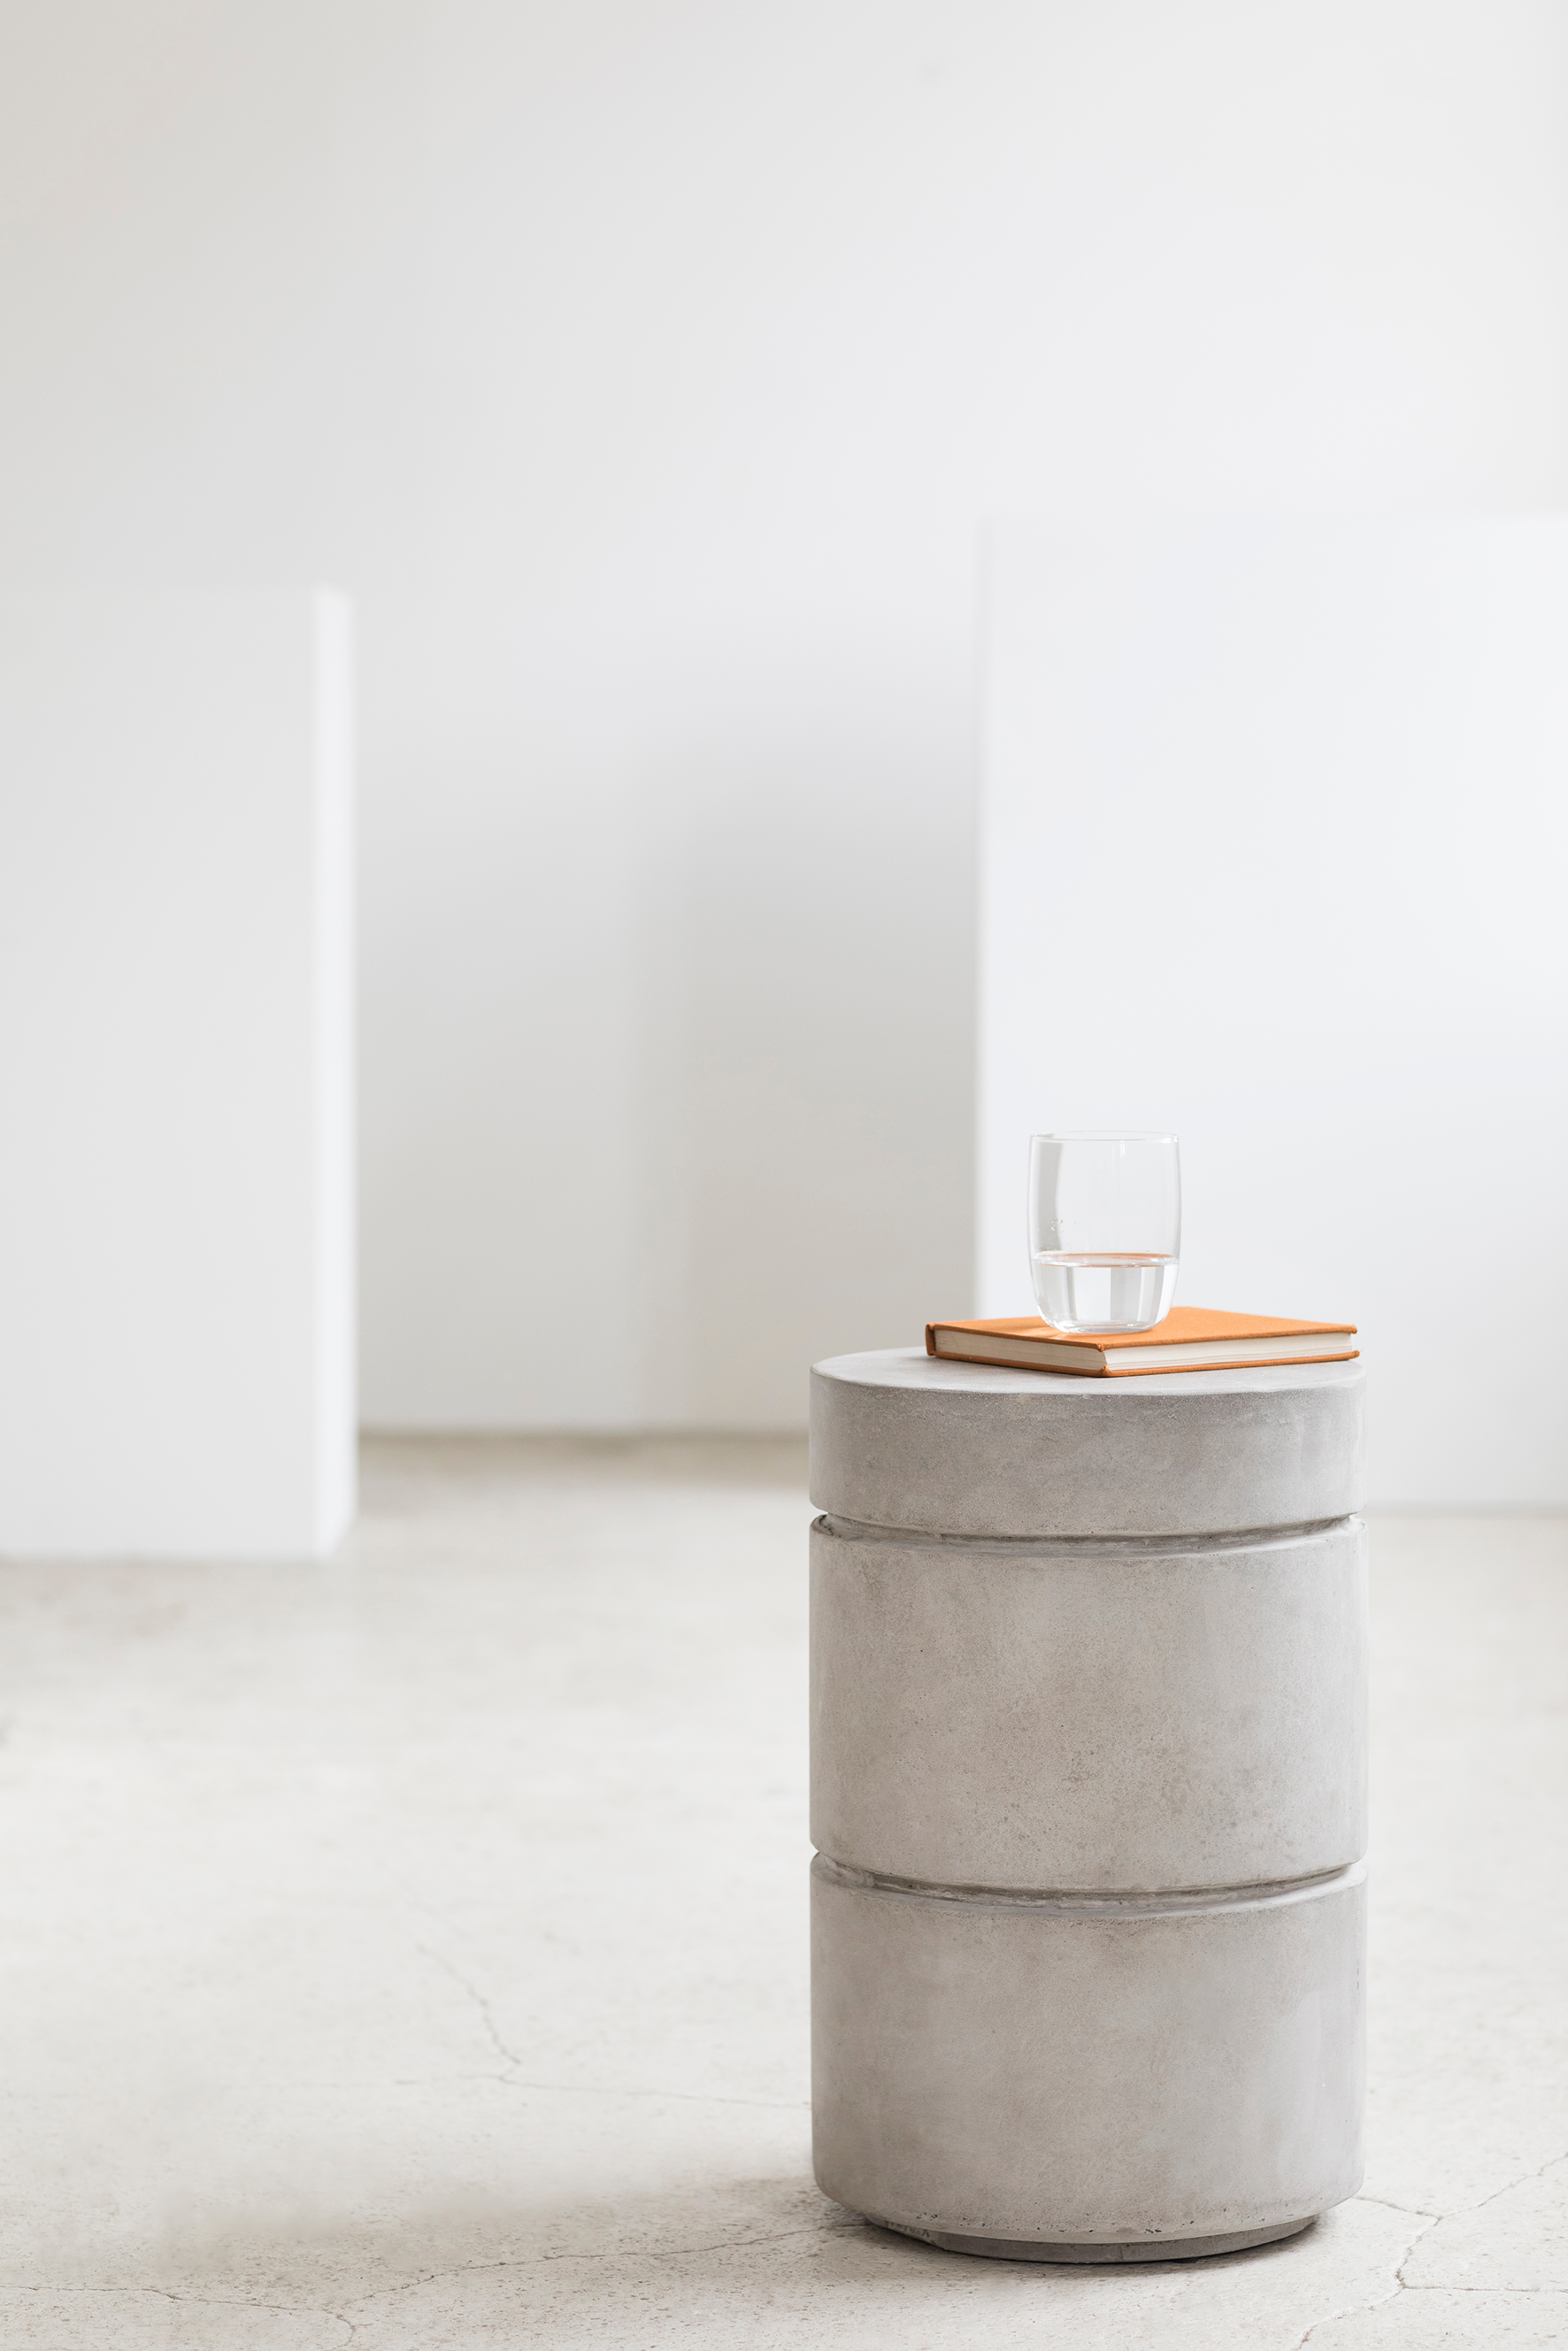 Round concrete stool Marie Michielssen